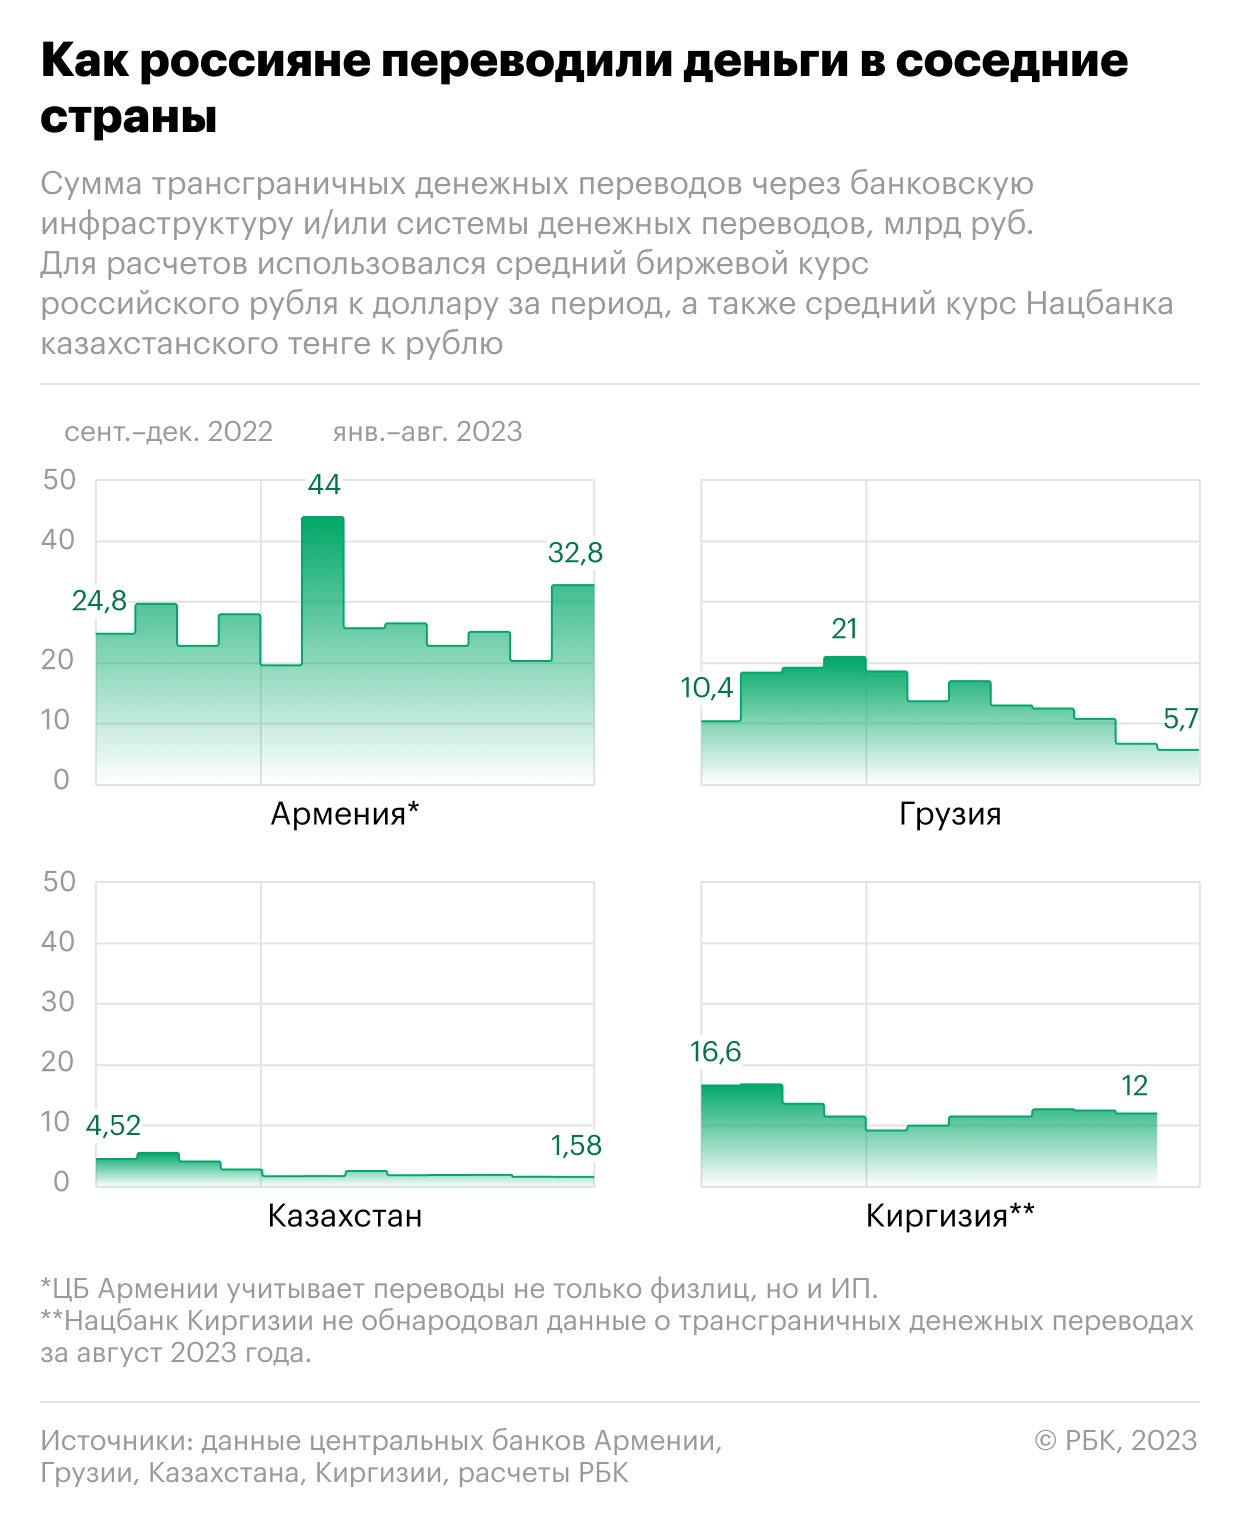 Как Армения вырвалась в лидеры по росту переводов из России. Инфографика